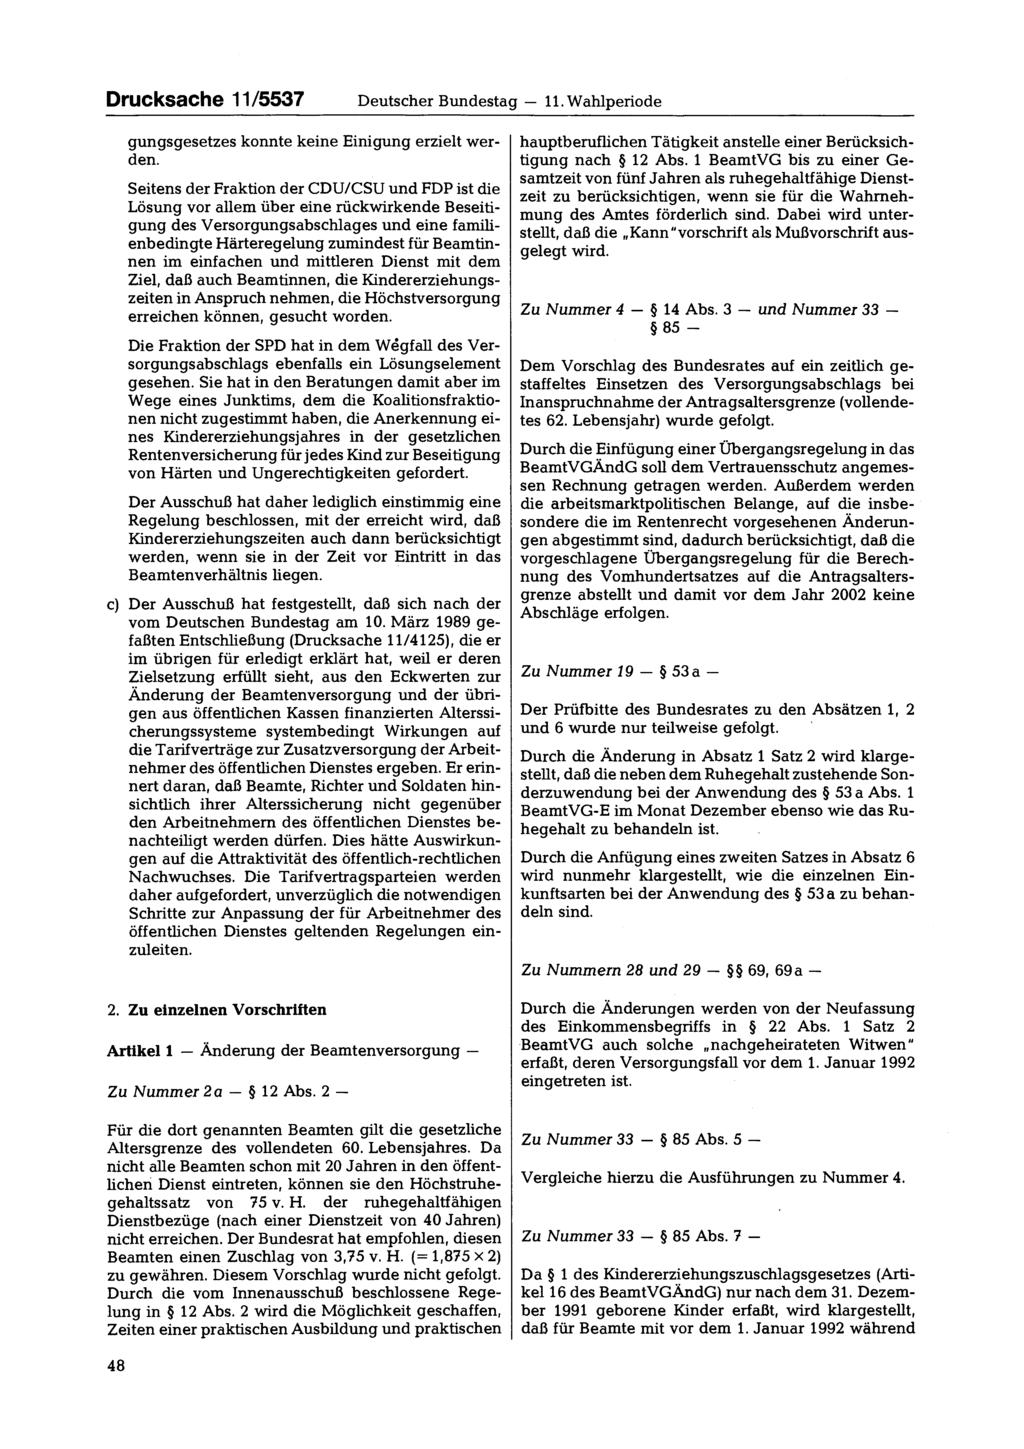 Drucksache 11/5537 Deutscher Bundestag 11. Wahlperiode gungsgesetzes konnte keine Einigung erzielt werden.